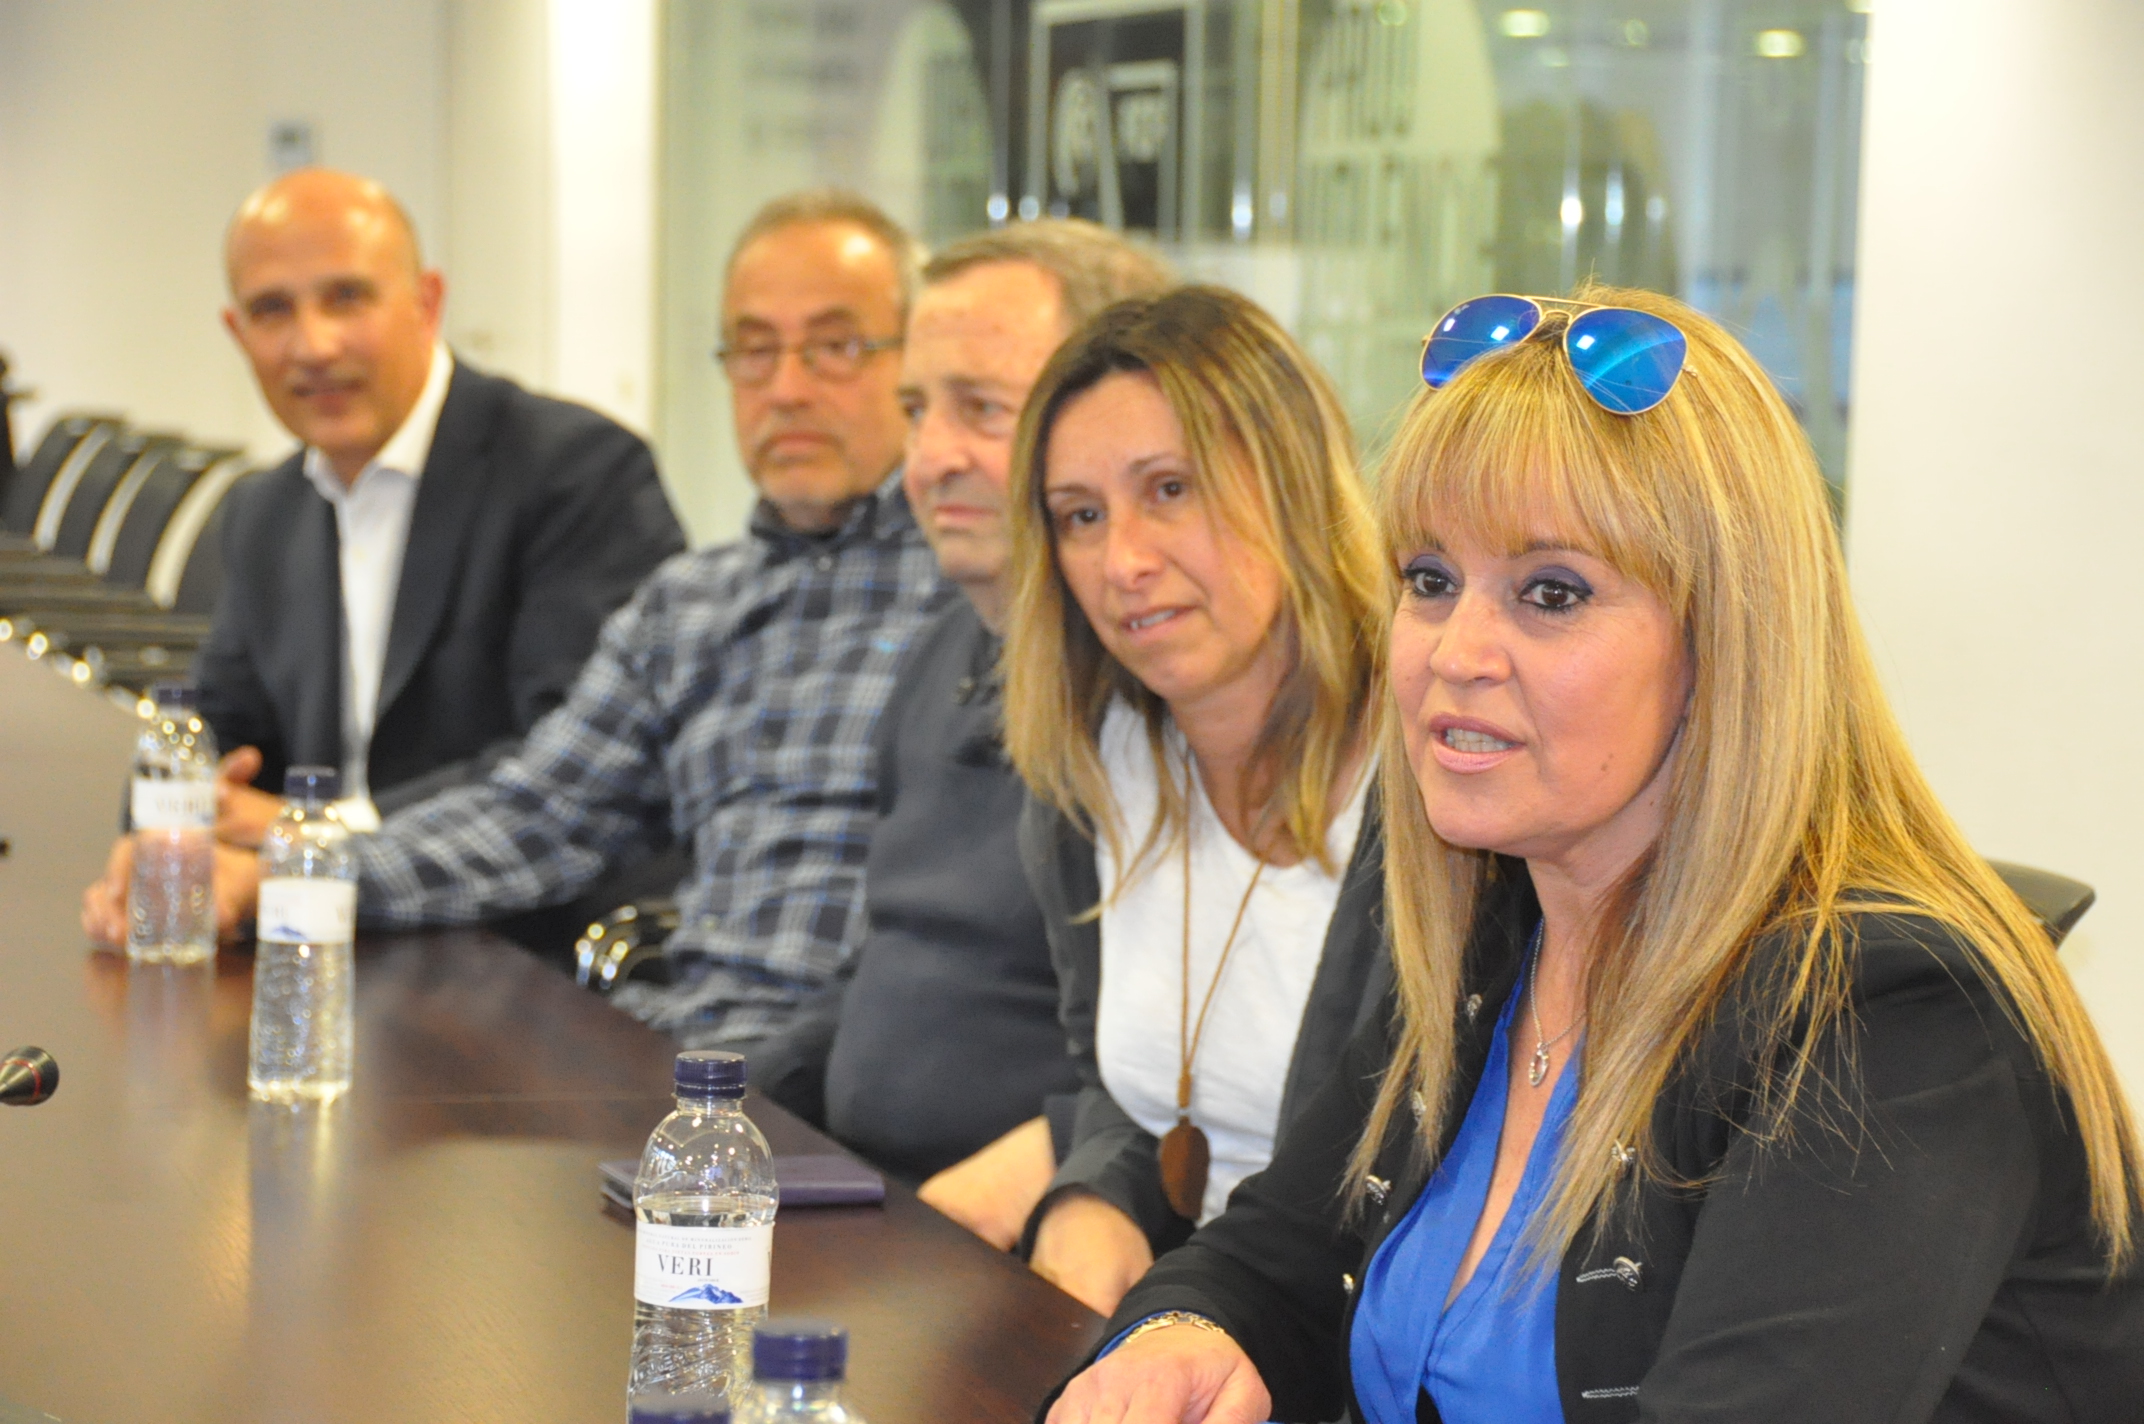 La presidenta del Canet FC, Glòria Ruiz, durant la seva exposició, al costat dels membres de la seva junta directiva